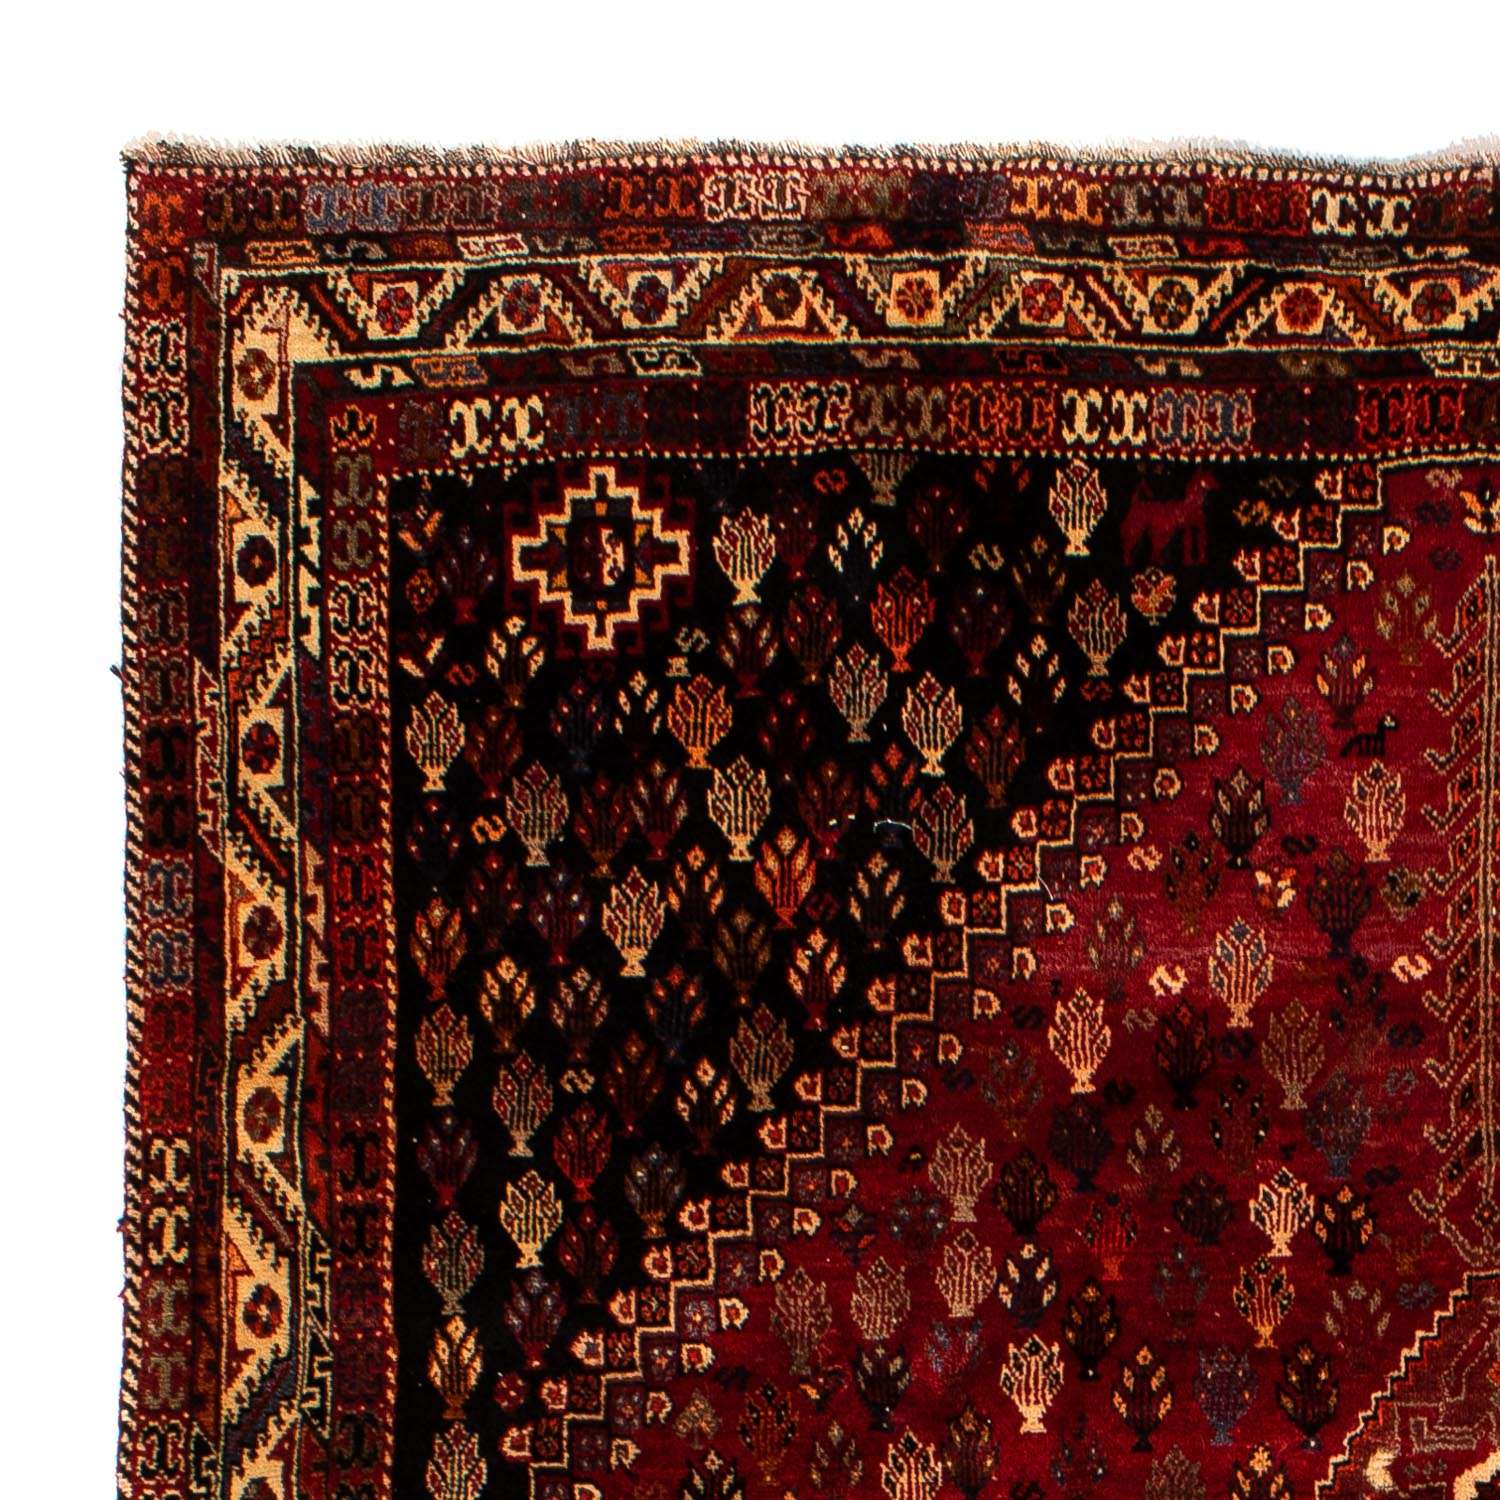 Tapis persan - Nomadic - 315 x 216 cm - rouge foncé